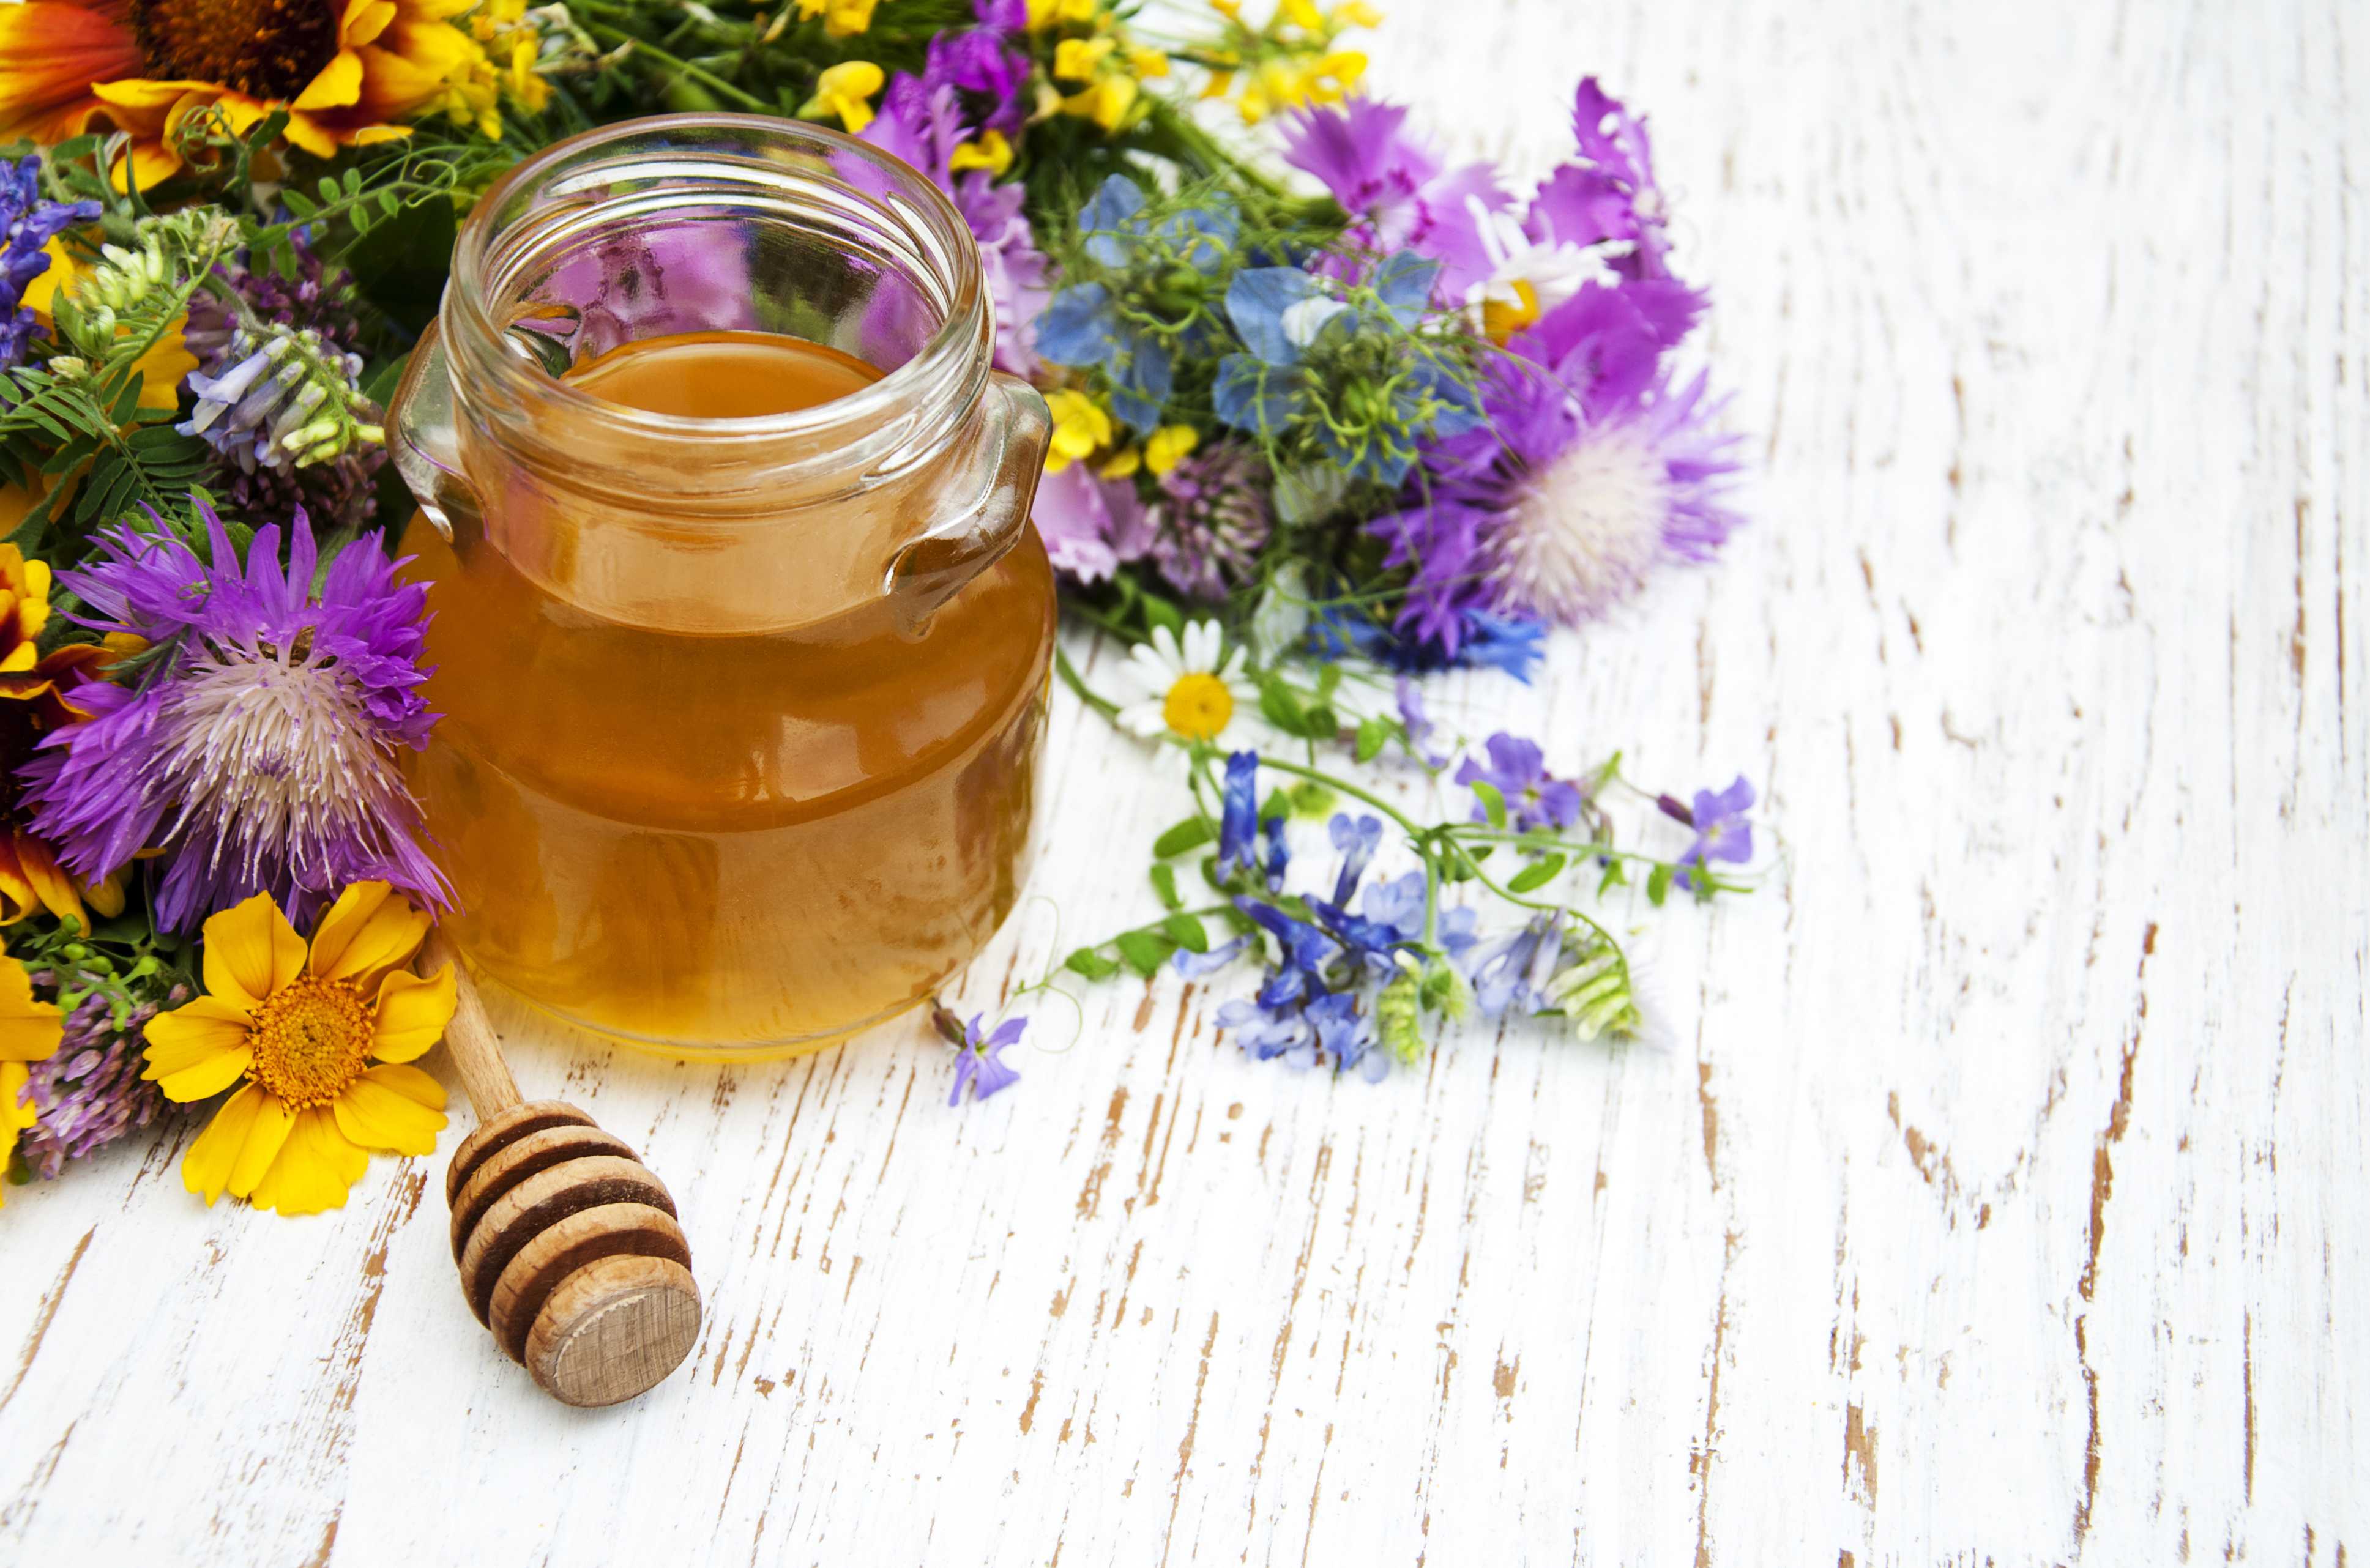 Miels rares de 3Bee, non seulement le miel de manuka mais aussi le miel biologique de tilleul, de printemps, d'ailanthus et de miellat